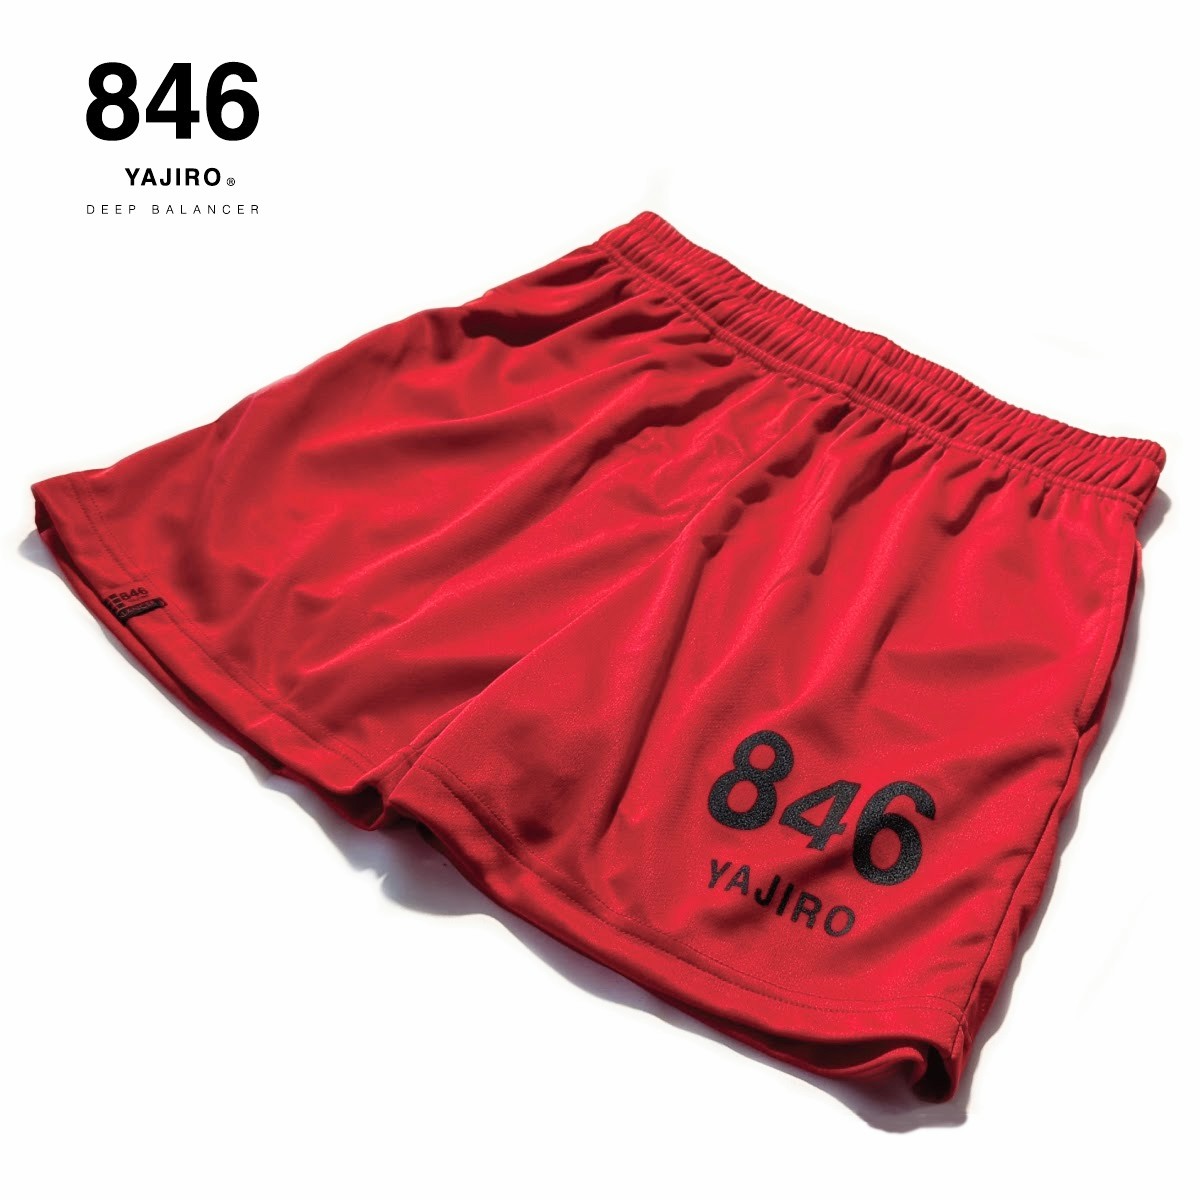 846YAJIRO スポーツウェア New Training Half pants Red (Unisex) トレーニング ハーフパンツ パンツ  ポリエステル スポーツパンツ レッド メンズ レディース ユニセックス 男女兼用 スポーツウェア ジョギング ランニング ヨガ ウェア 吸汗 吸水  速乾